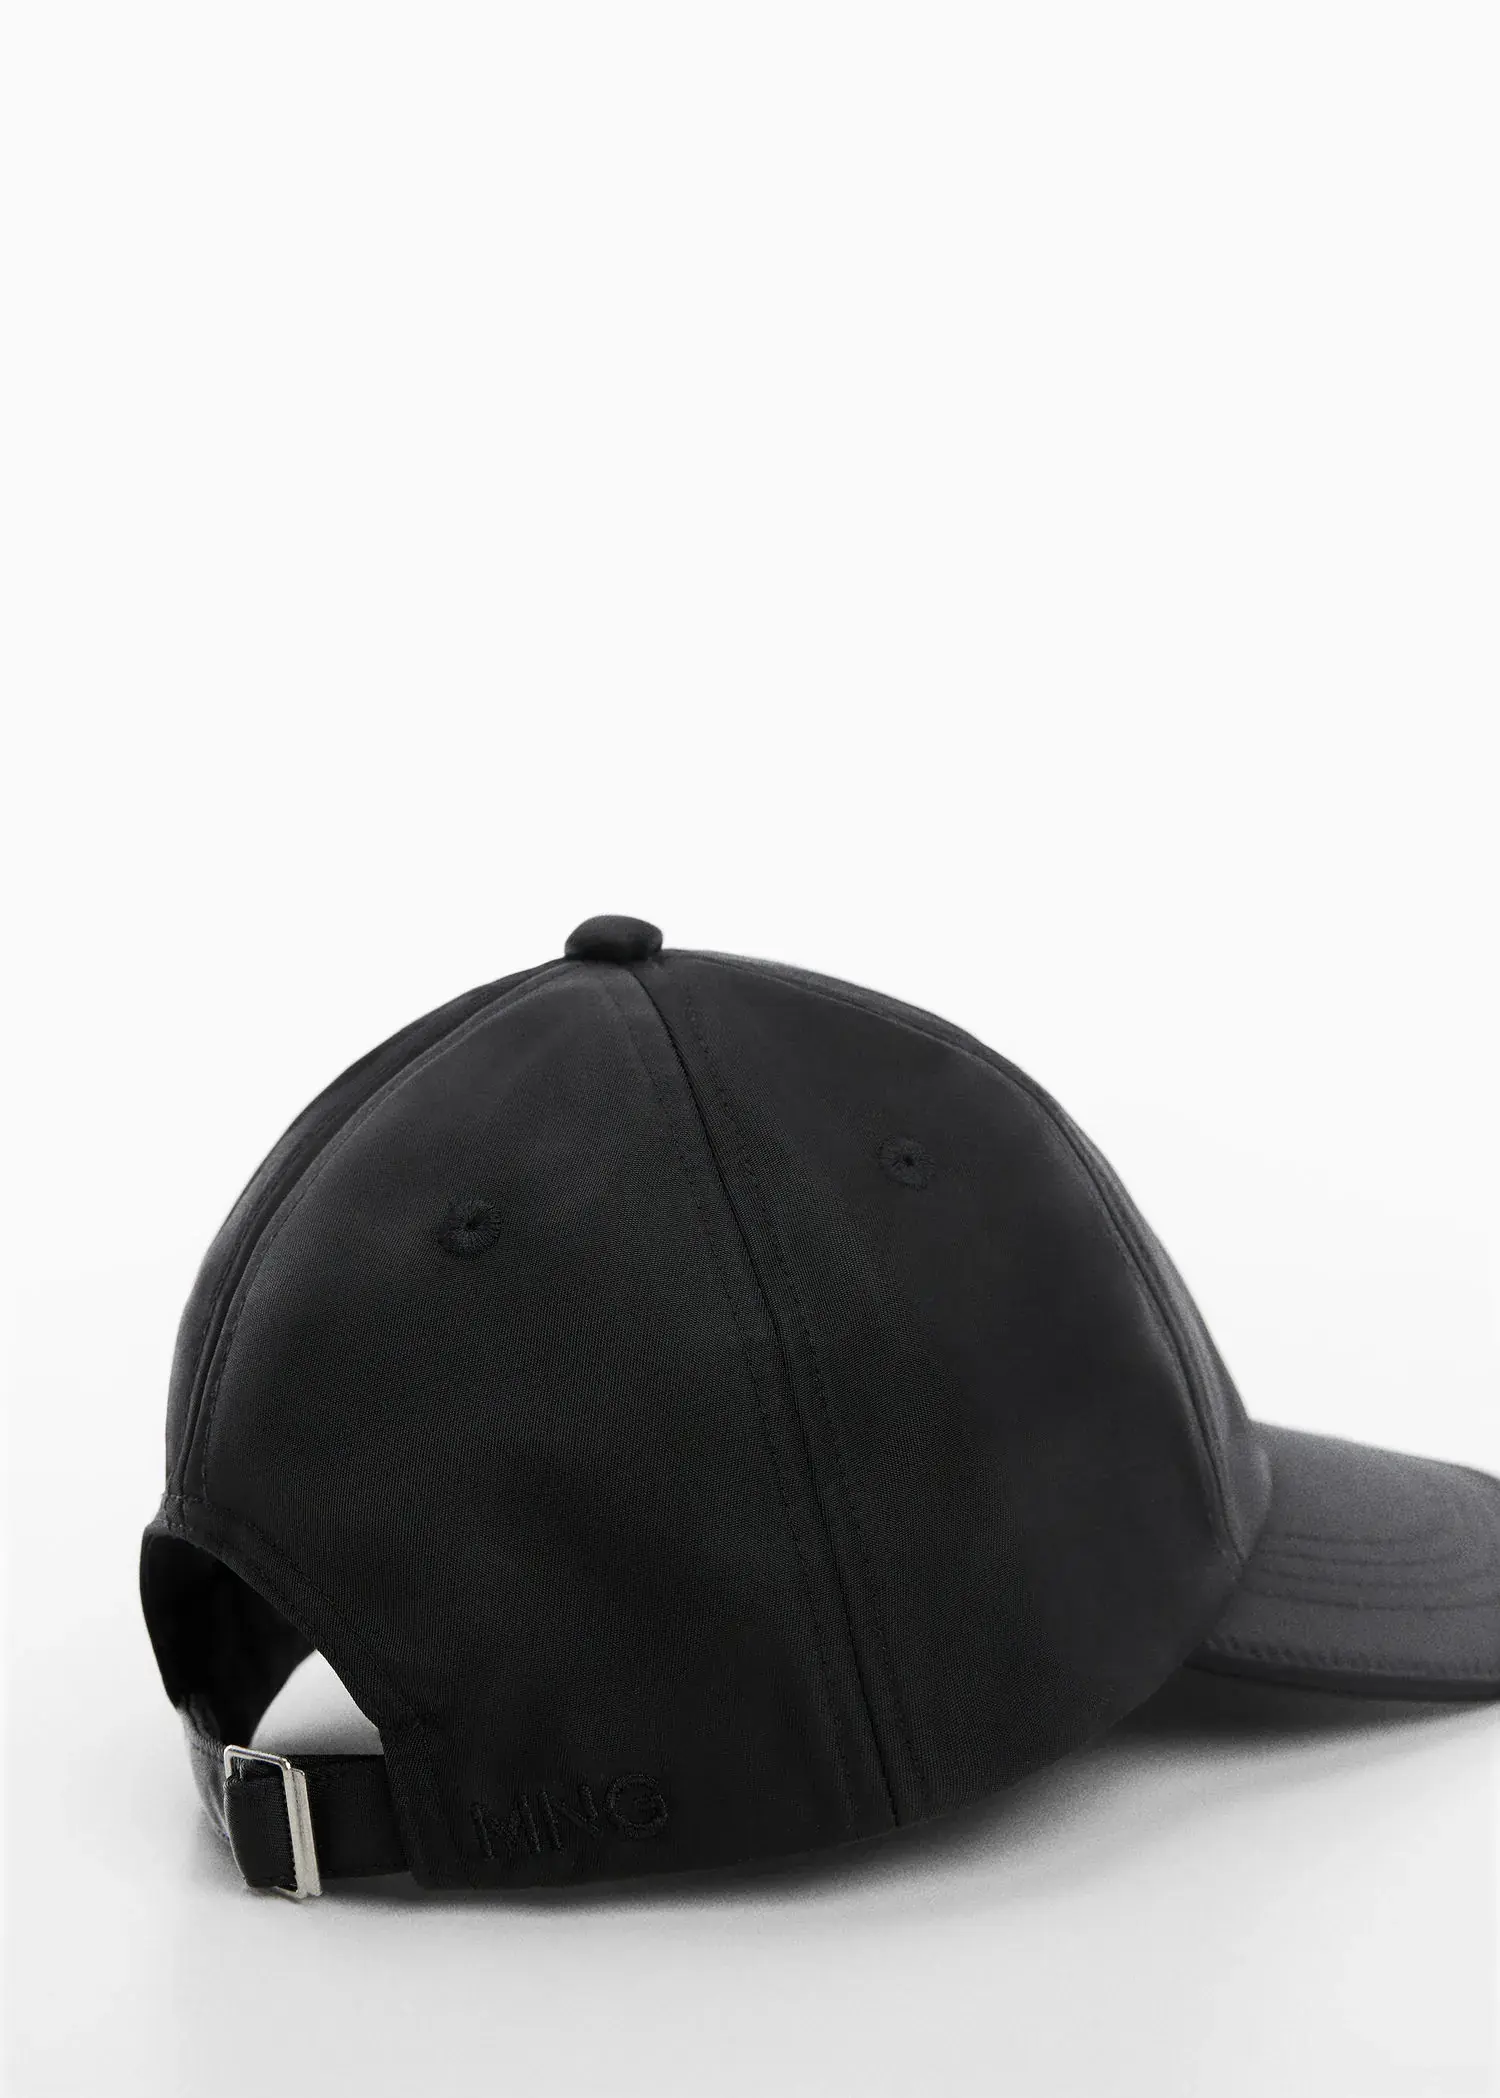 Mango Soft visor cap. 3